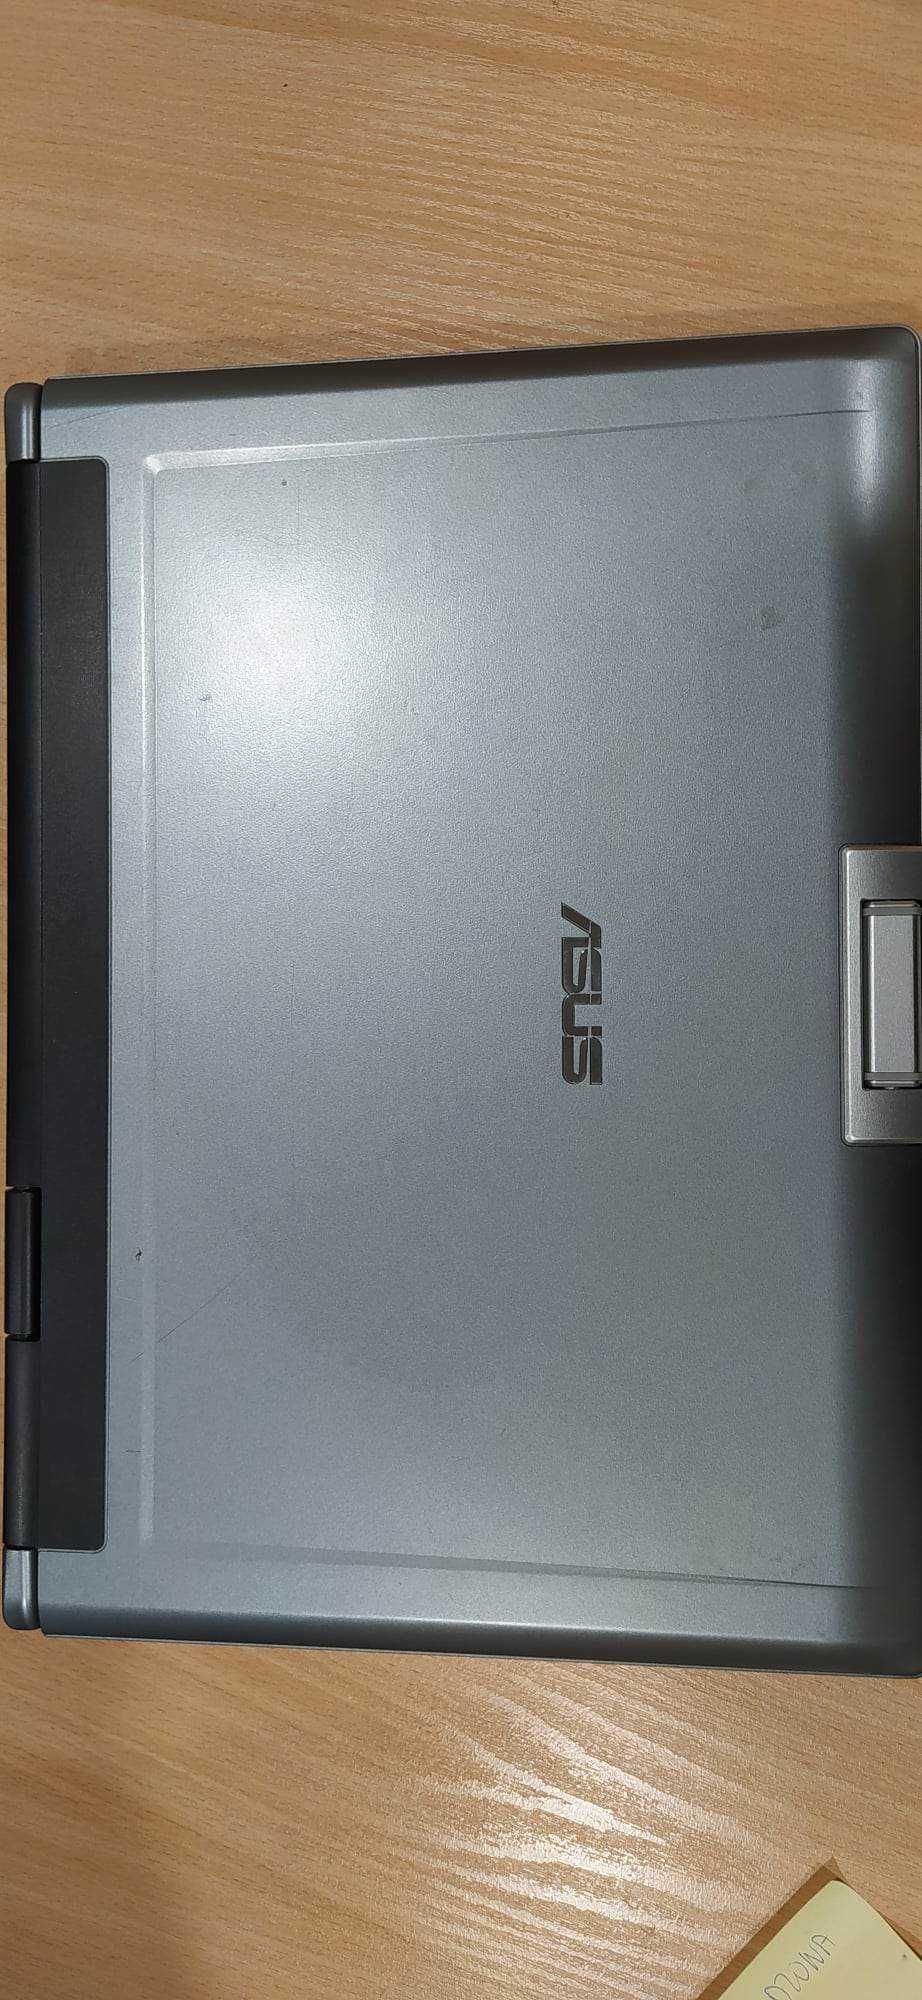 Laptop Asus F5R-Ap040